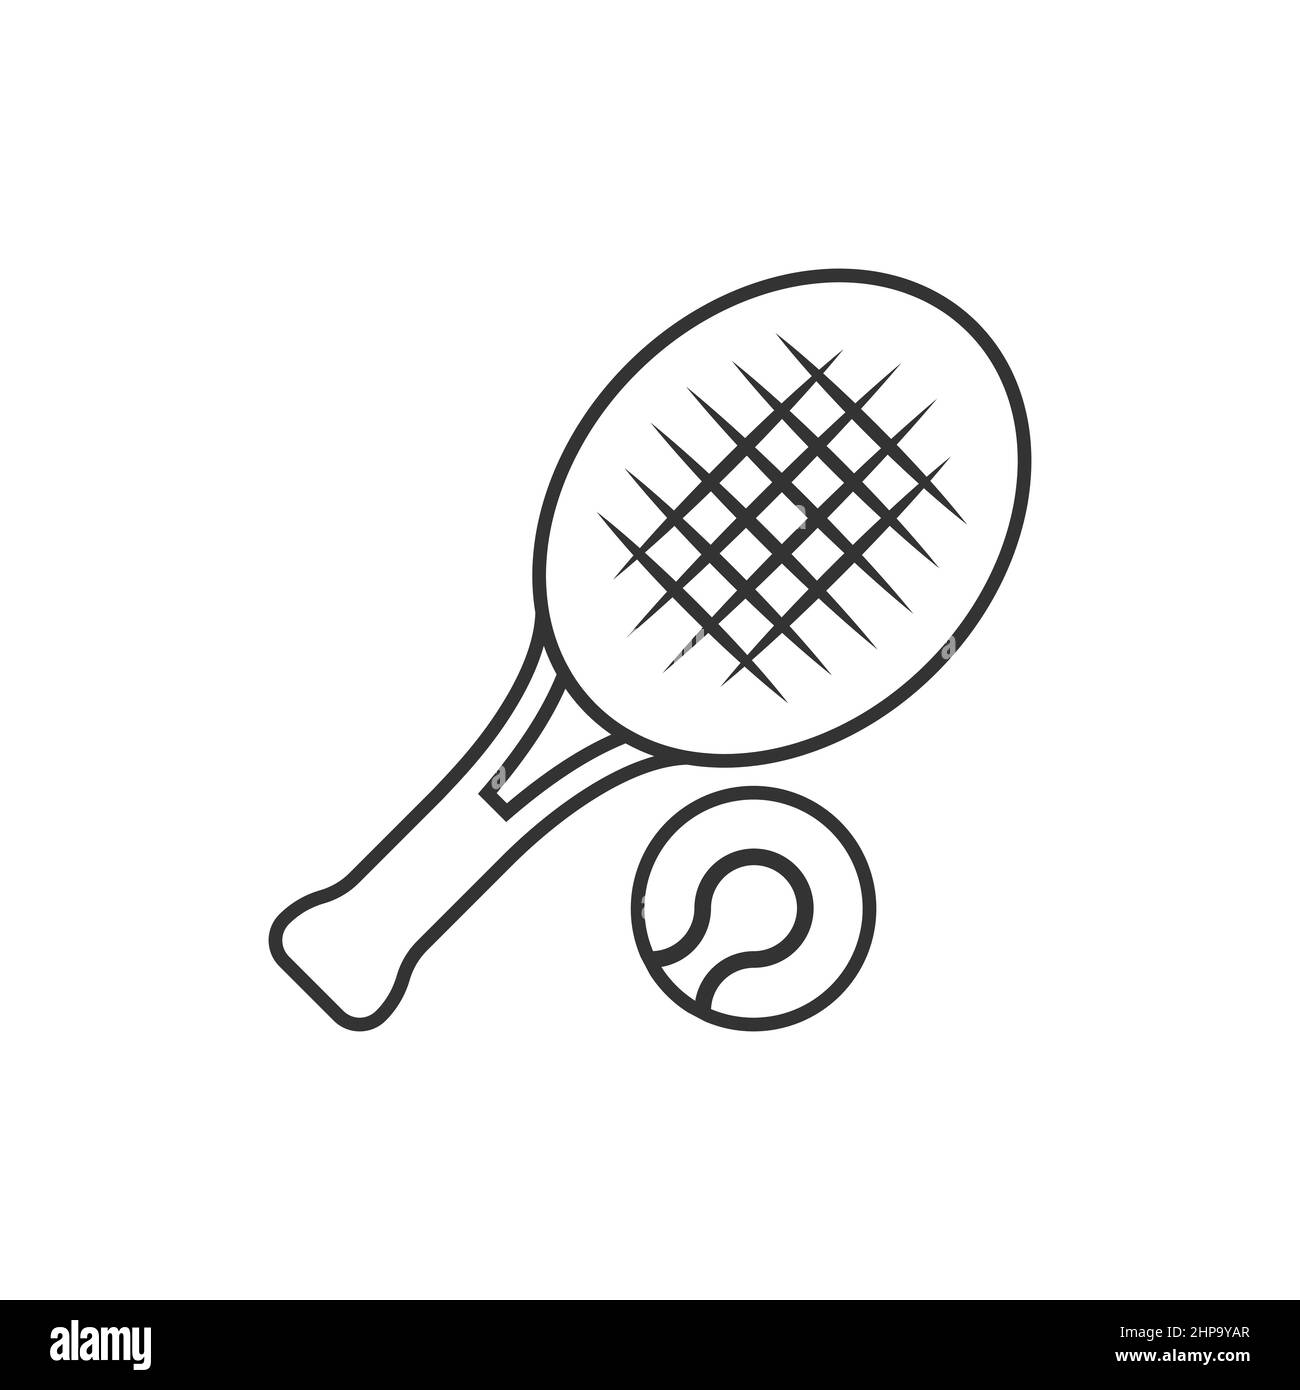 Icona della racchetta da tennis Immagini e Fotos Stock - Alamy